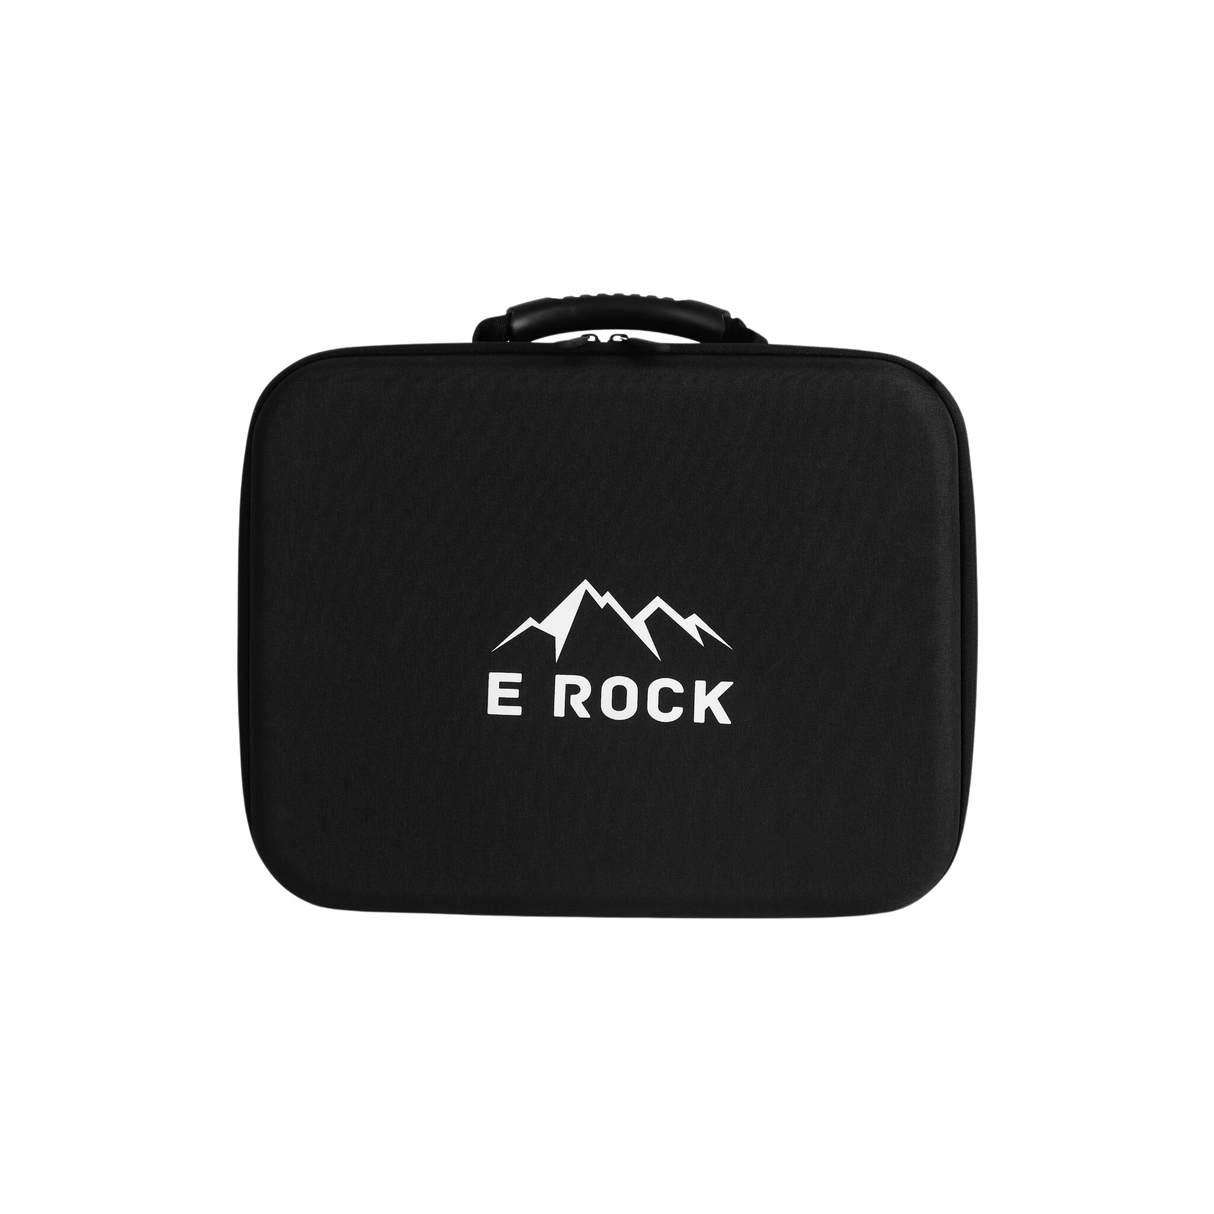 Eock Pro Storage Bag Ladekabel oder mobiles Ladegerät